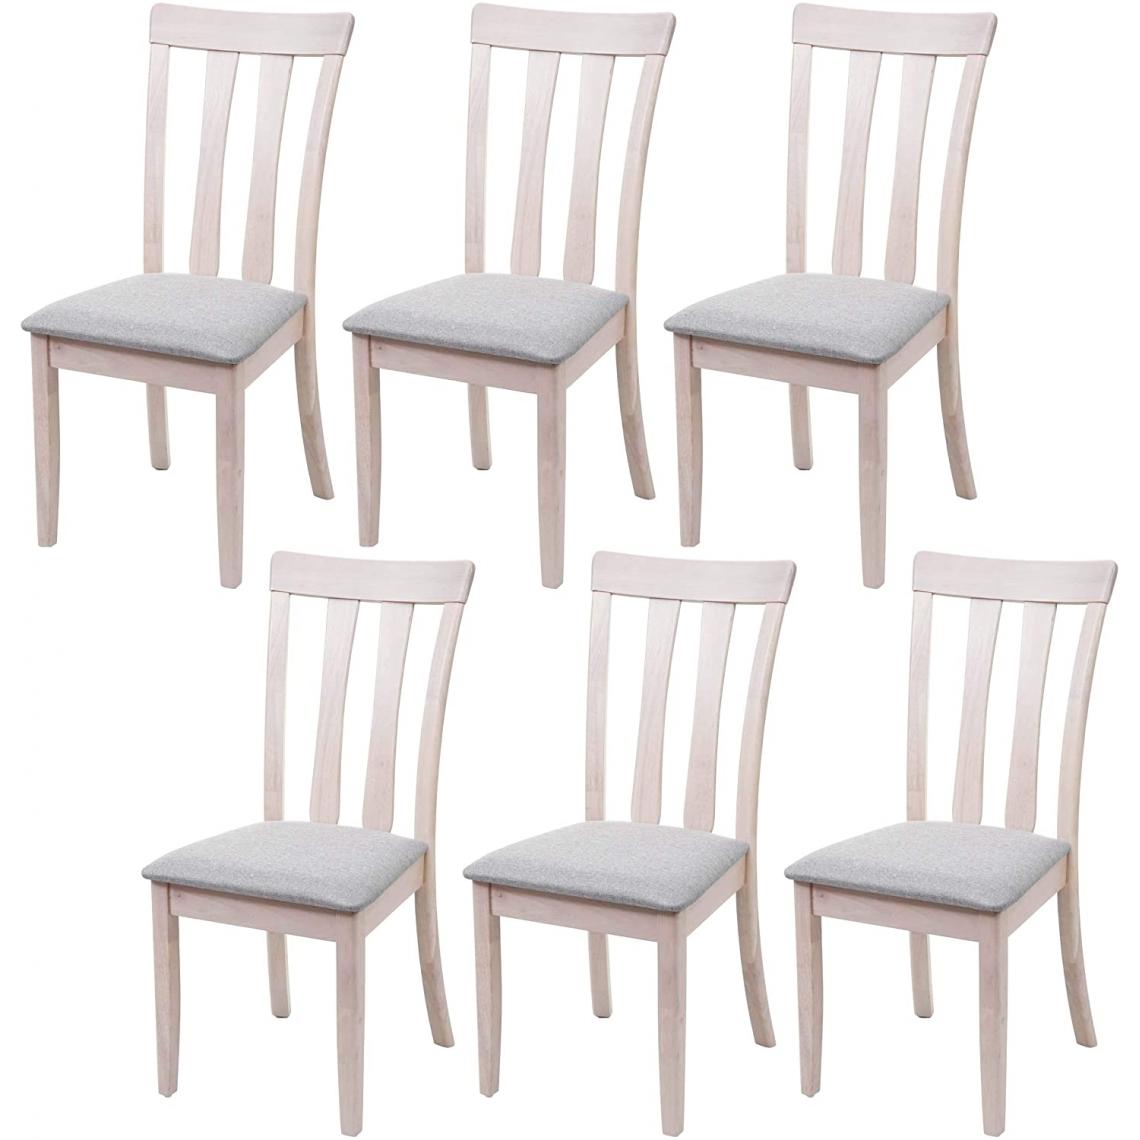 Decoshop26 - Lot de 6 chaises de salle à manger en bois massif clair et assise en tissu gris CDS04665 - Chaises